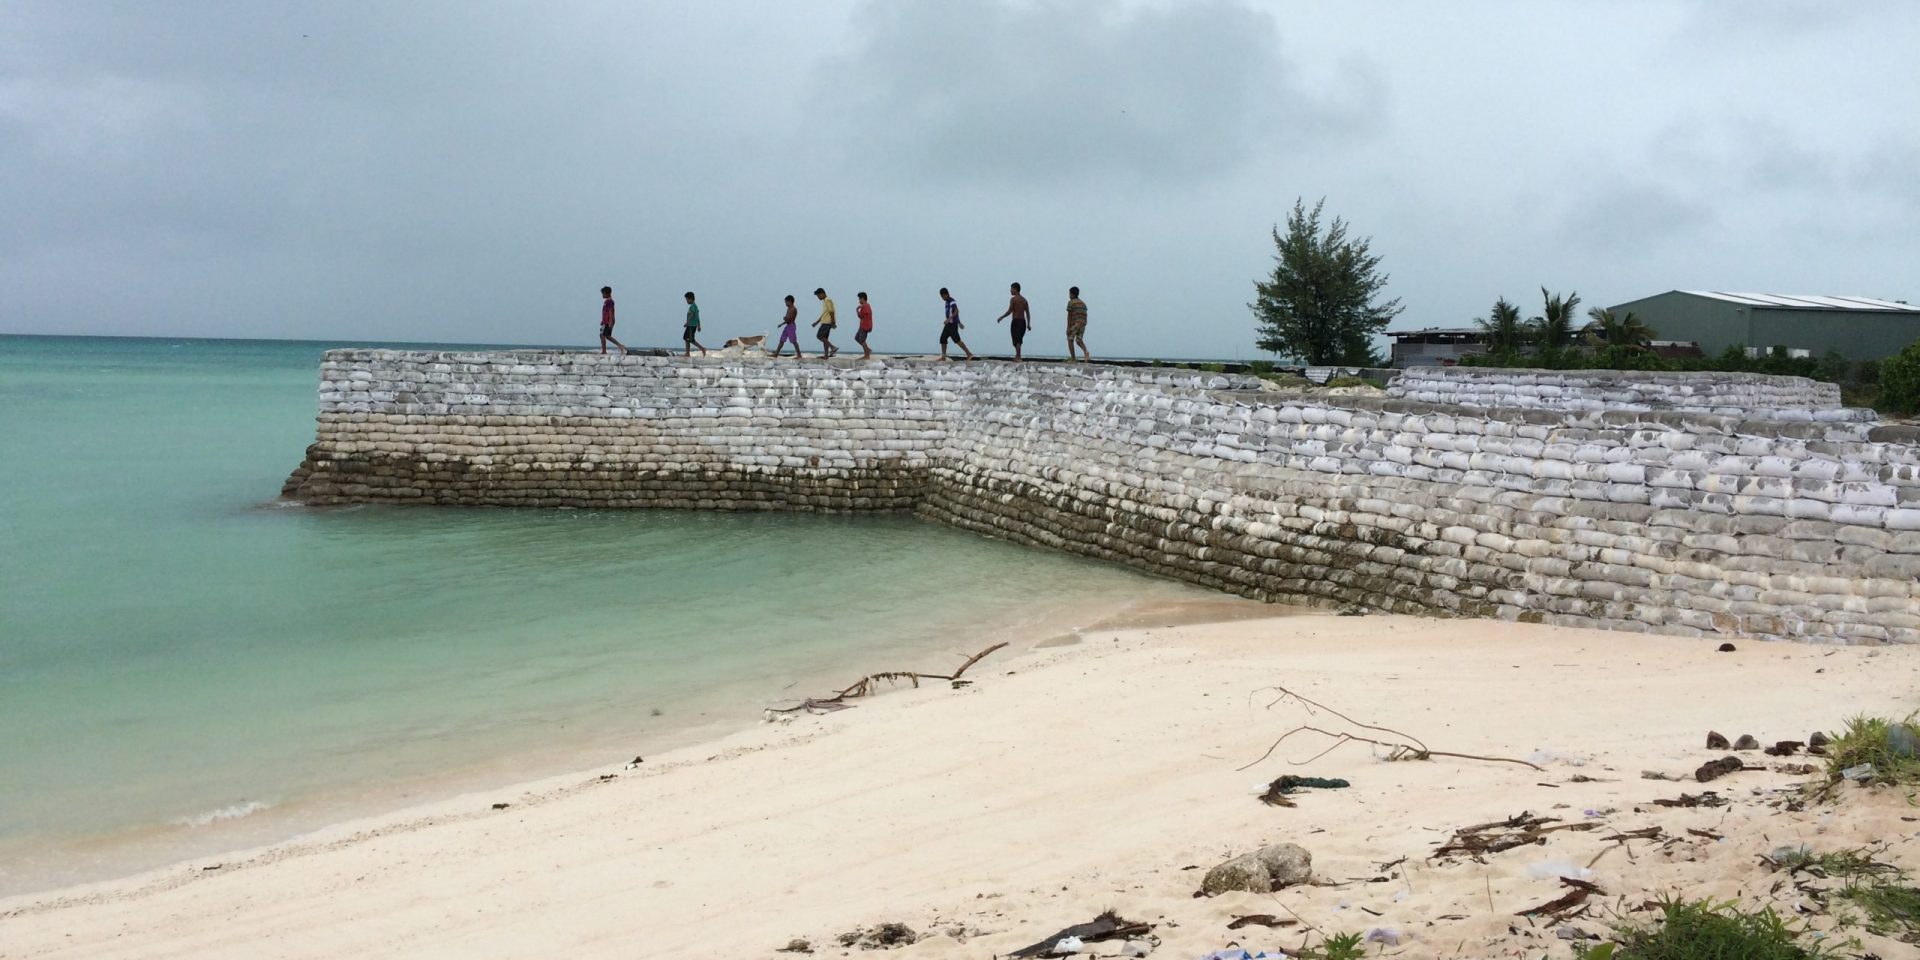 A group of young people walk along a sea wall in Tarawa, Kiribati.